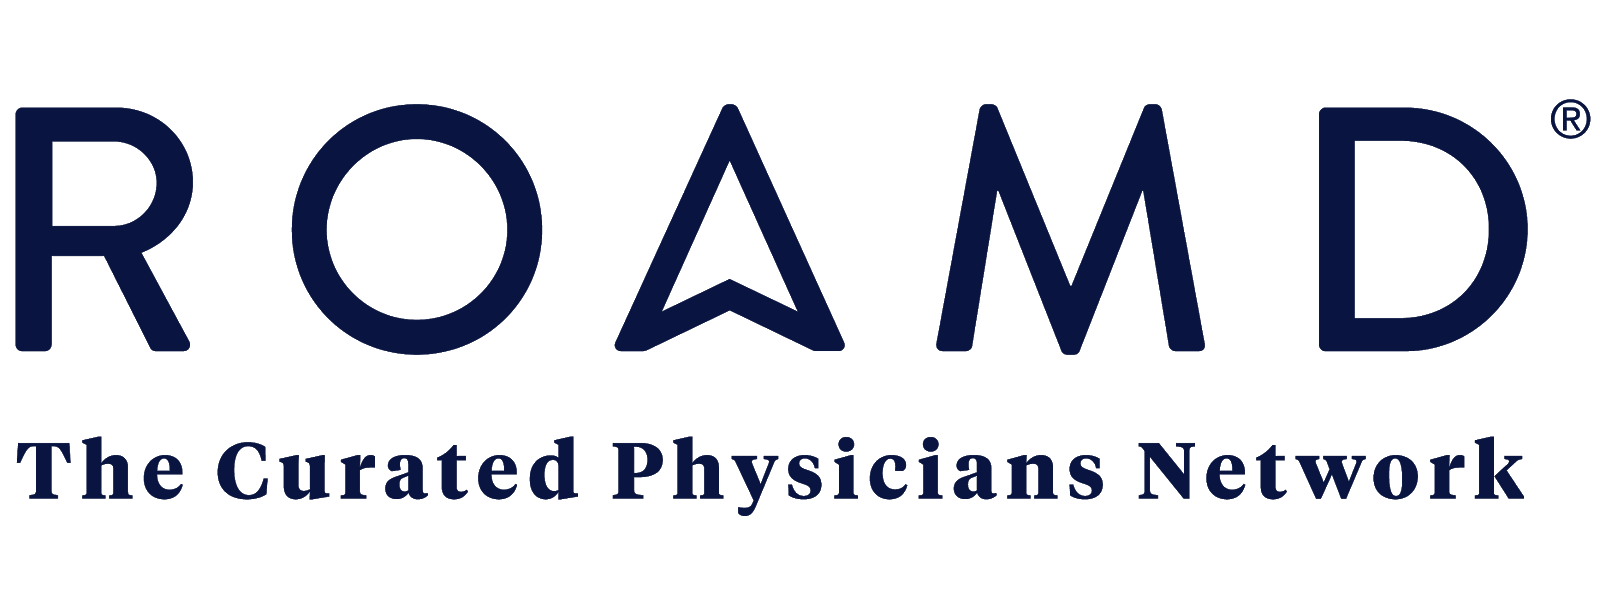 ROAMD-Logo-re-sized